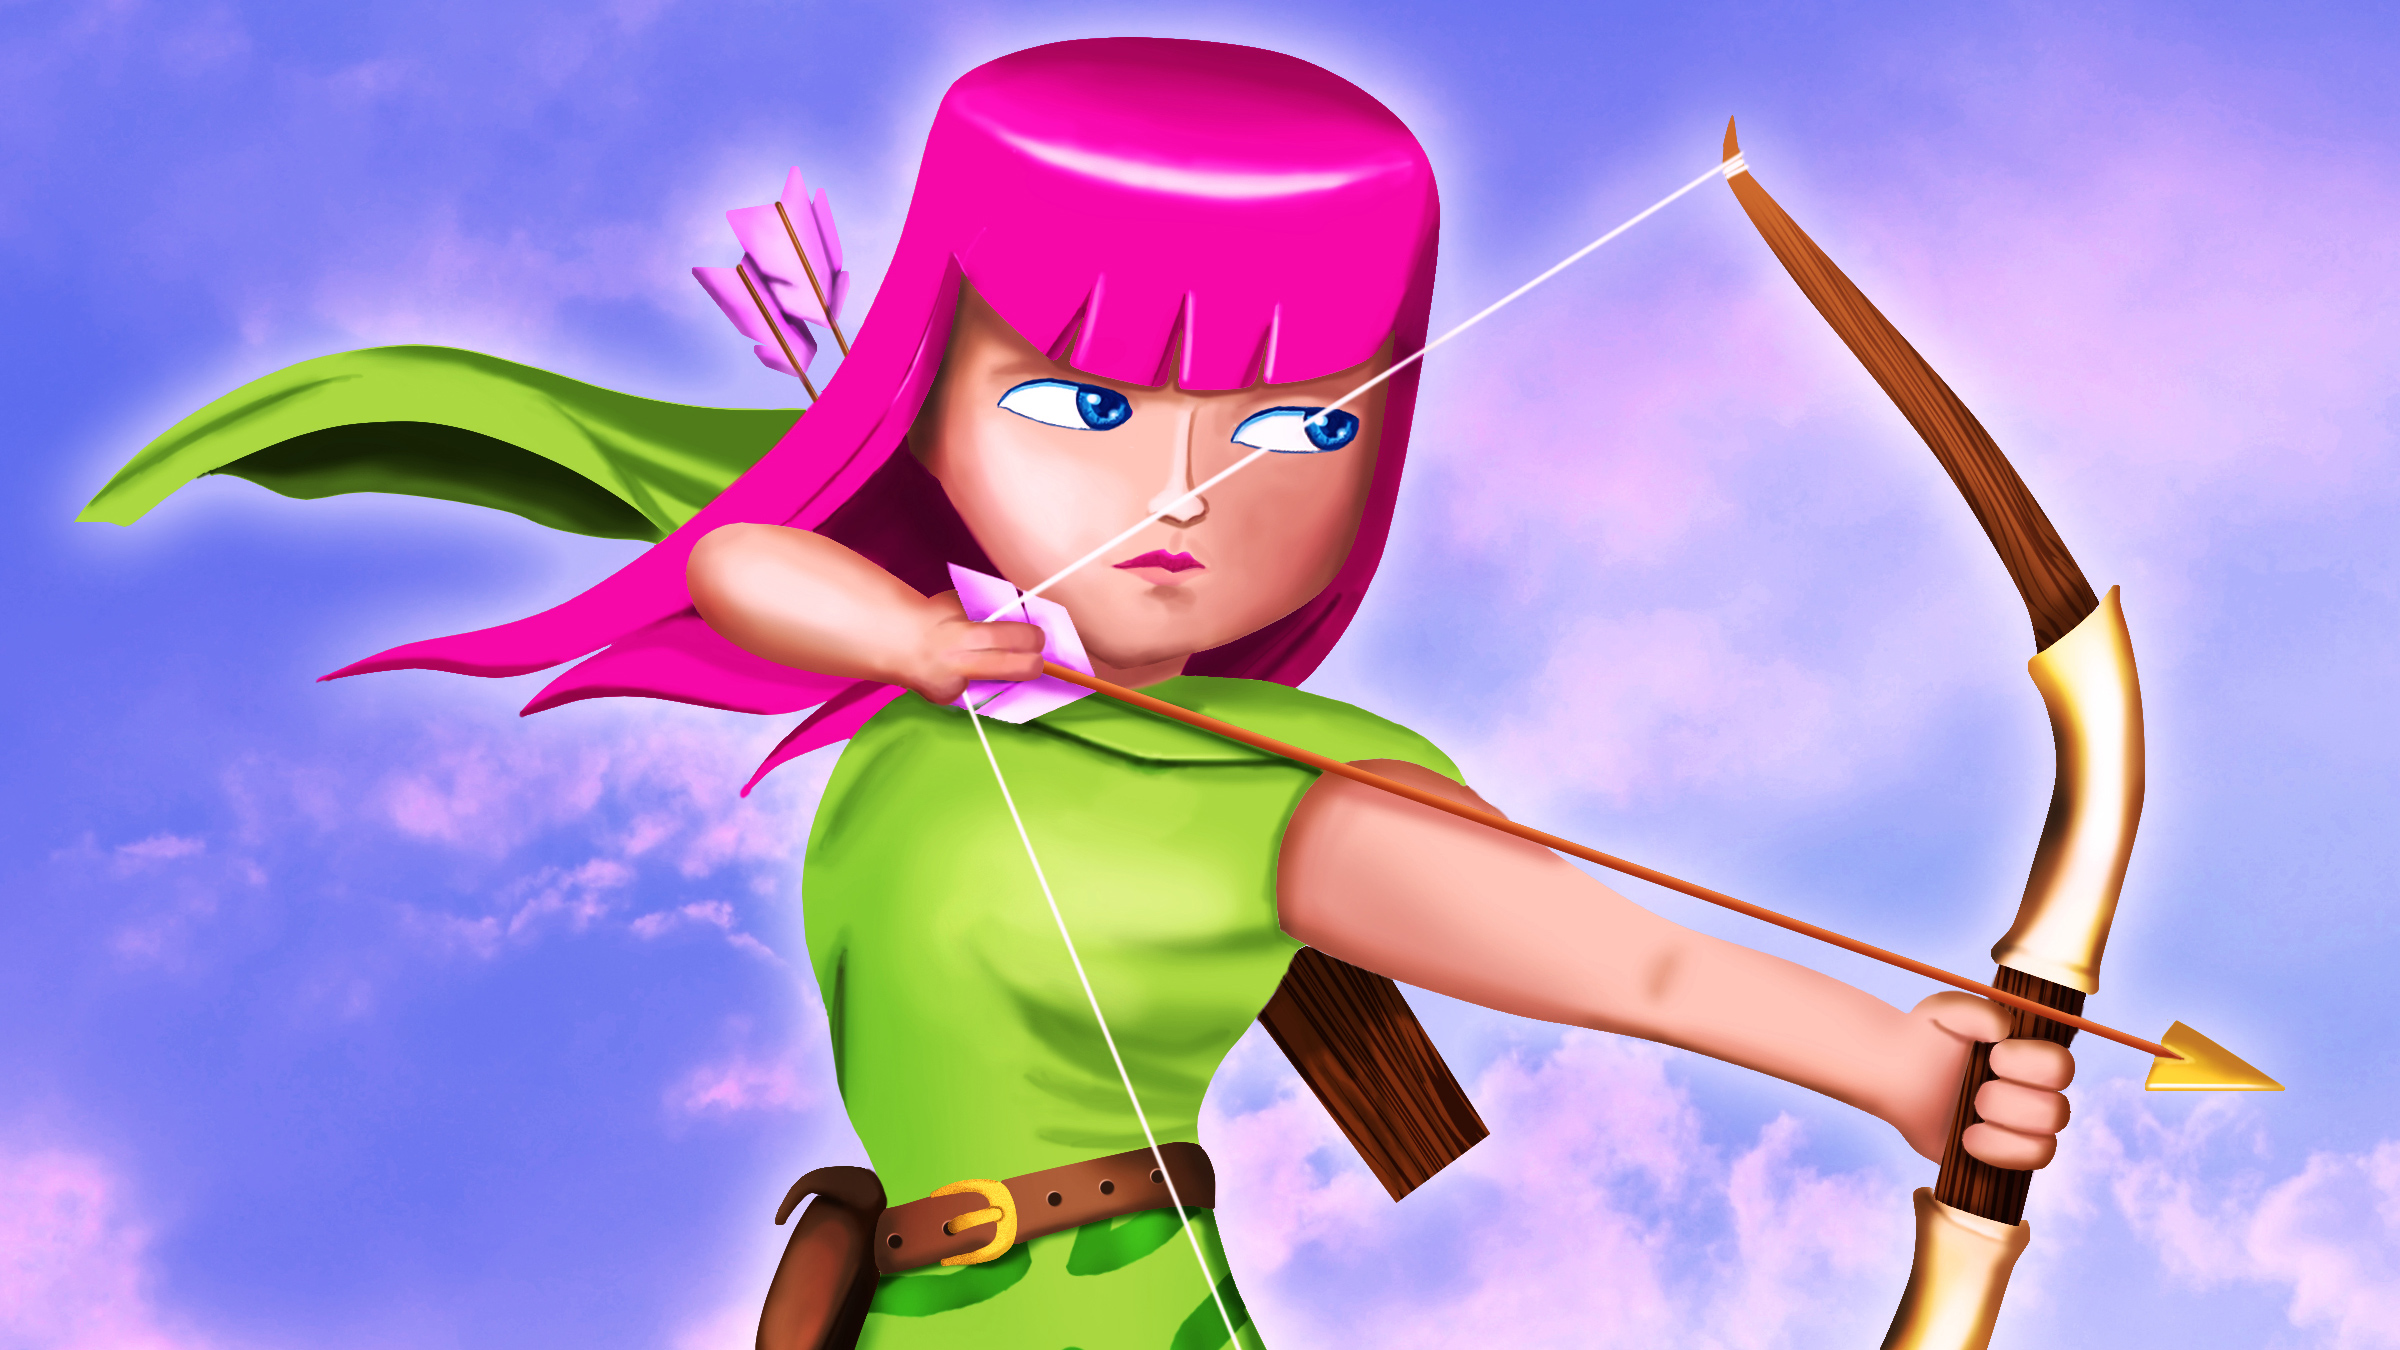 Бесплатное фото Лучница с розовыми волосами из игры Clash Of Clans